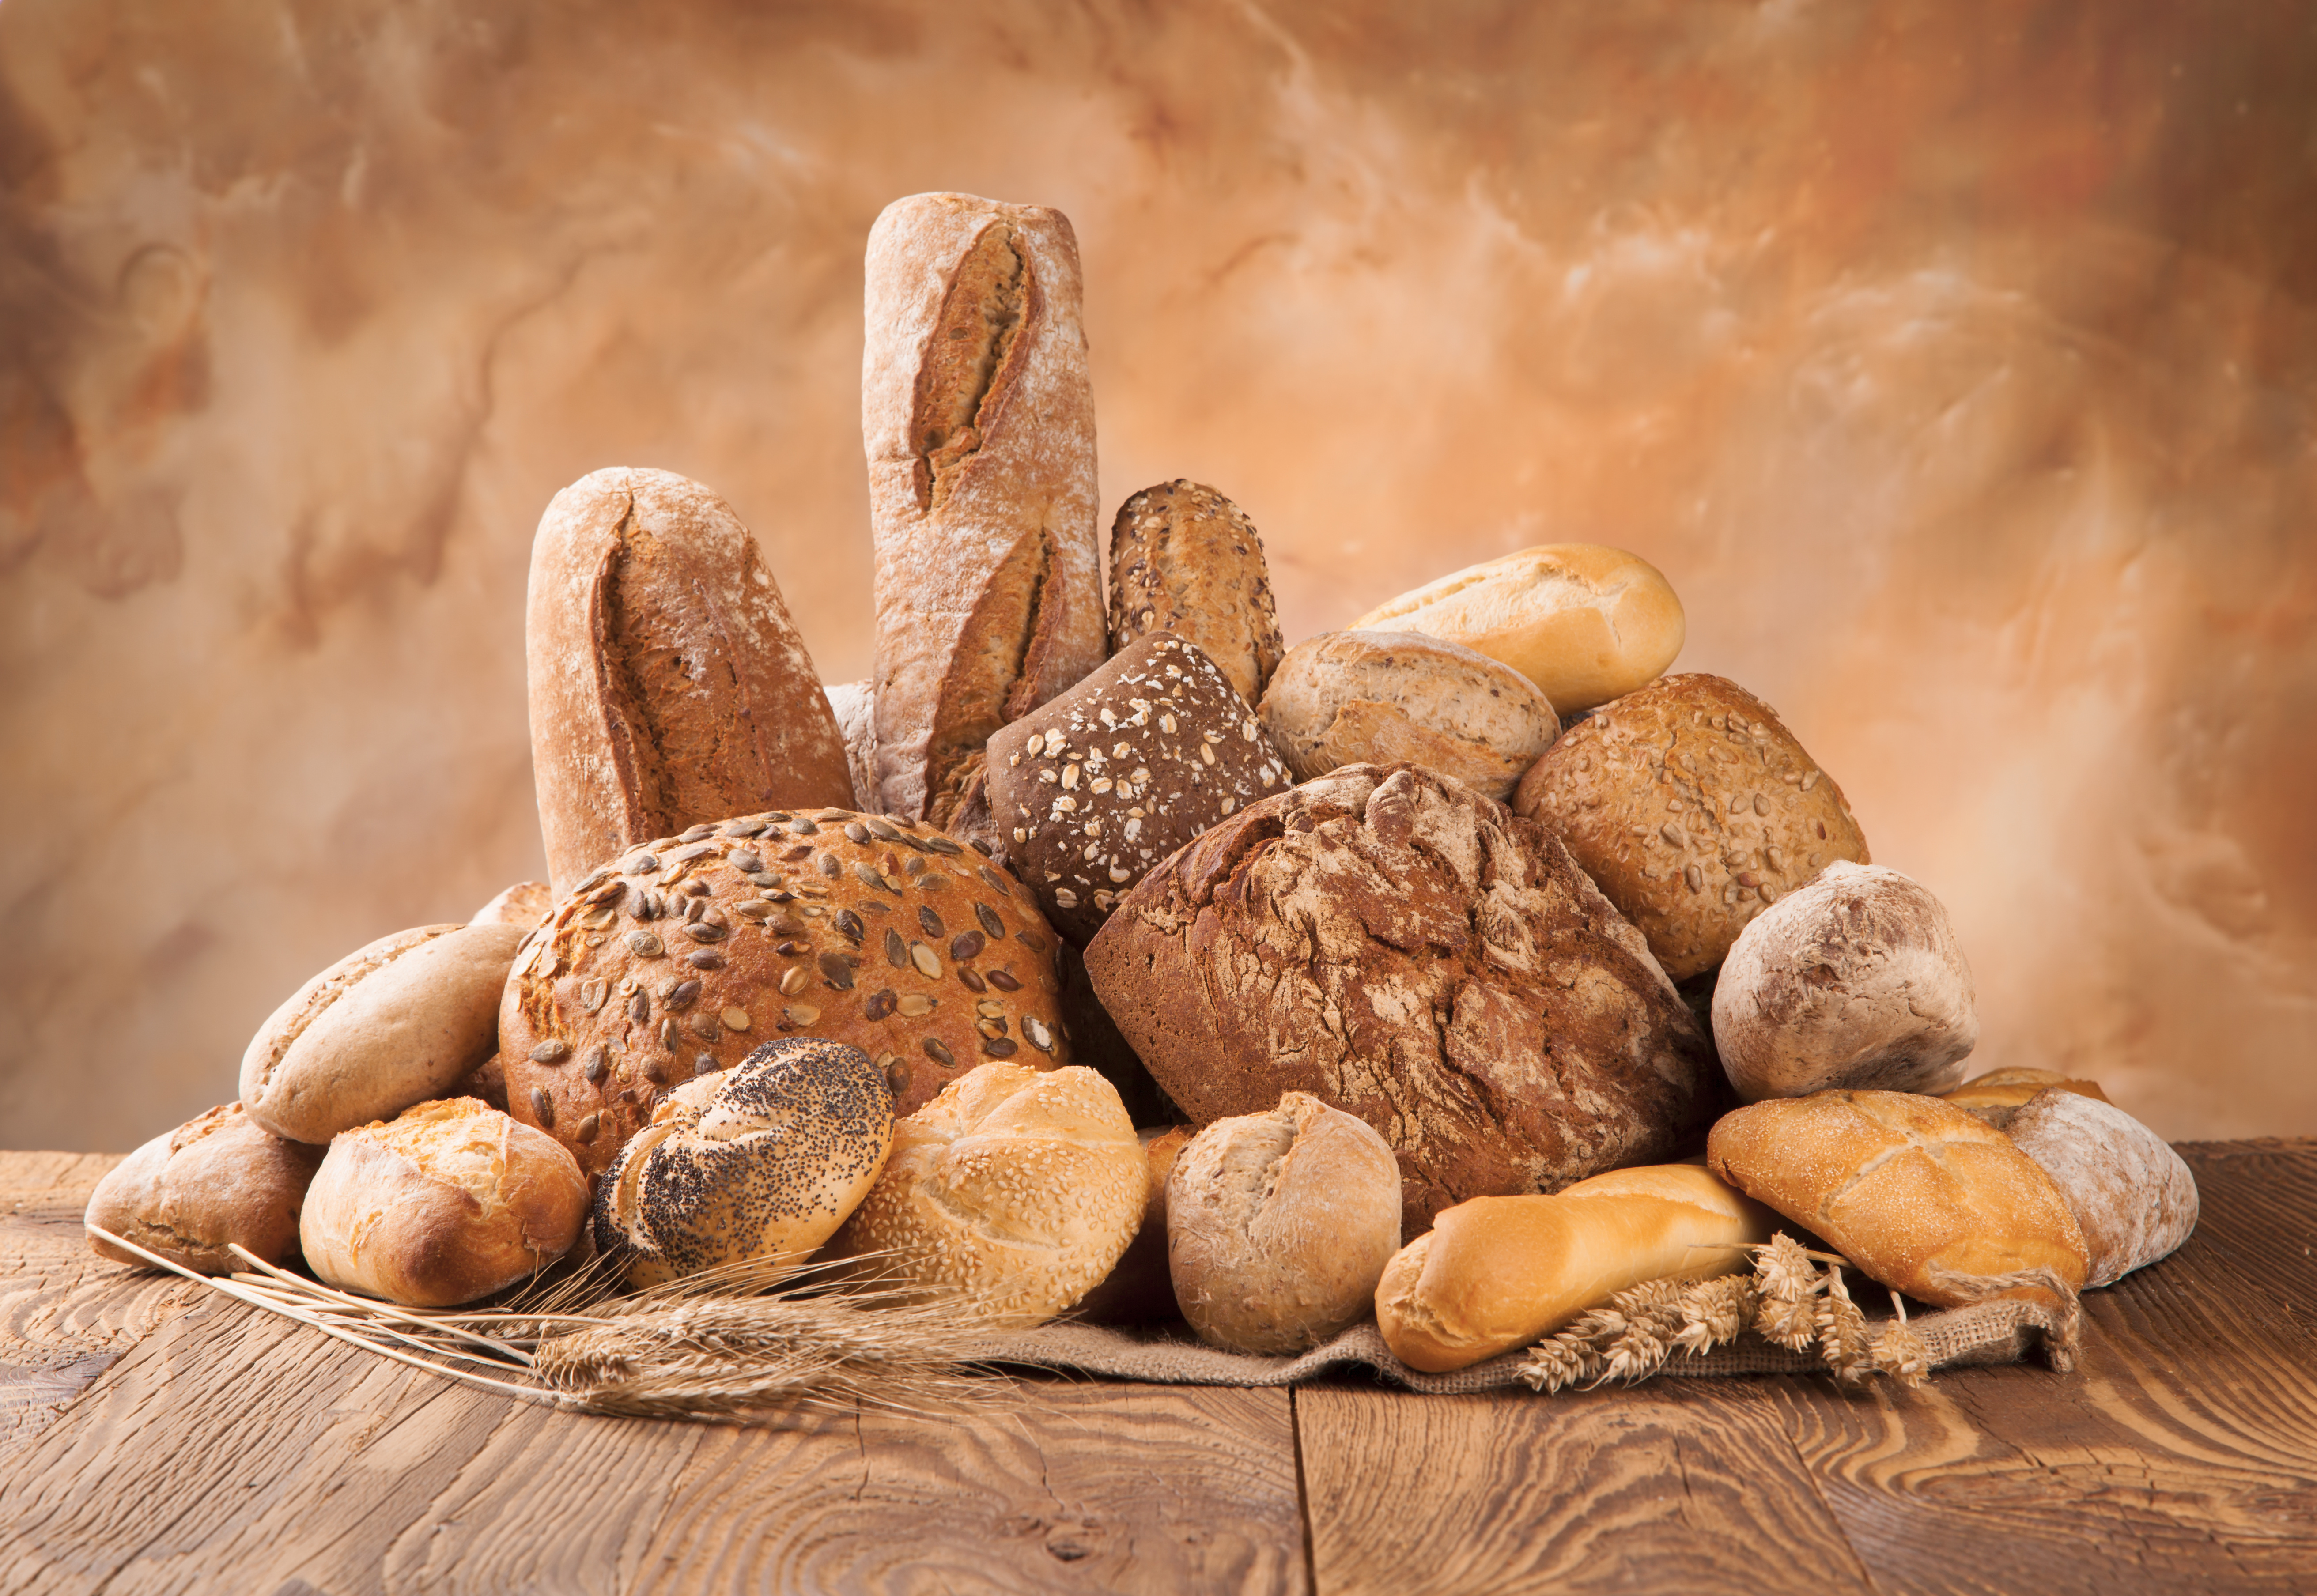 Nicht in eine Tüte: Brötchen werden durch Brot meist sehr matschig ...